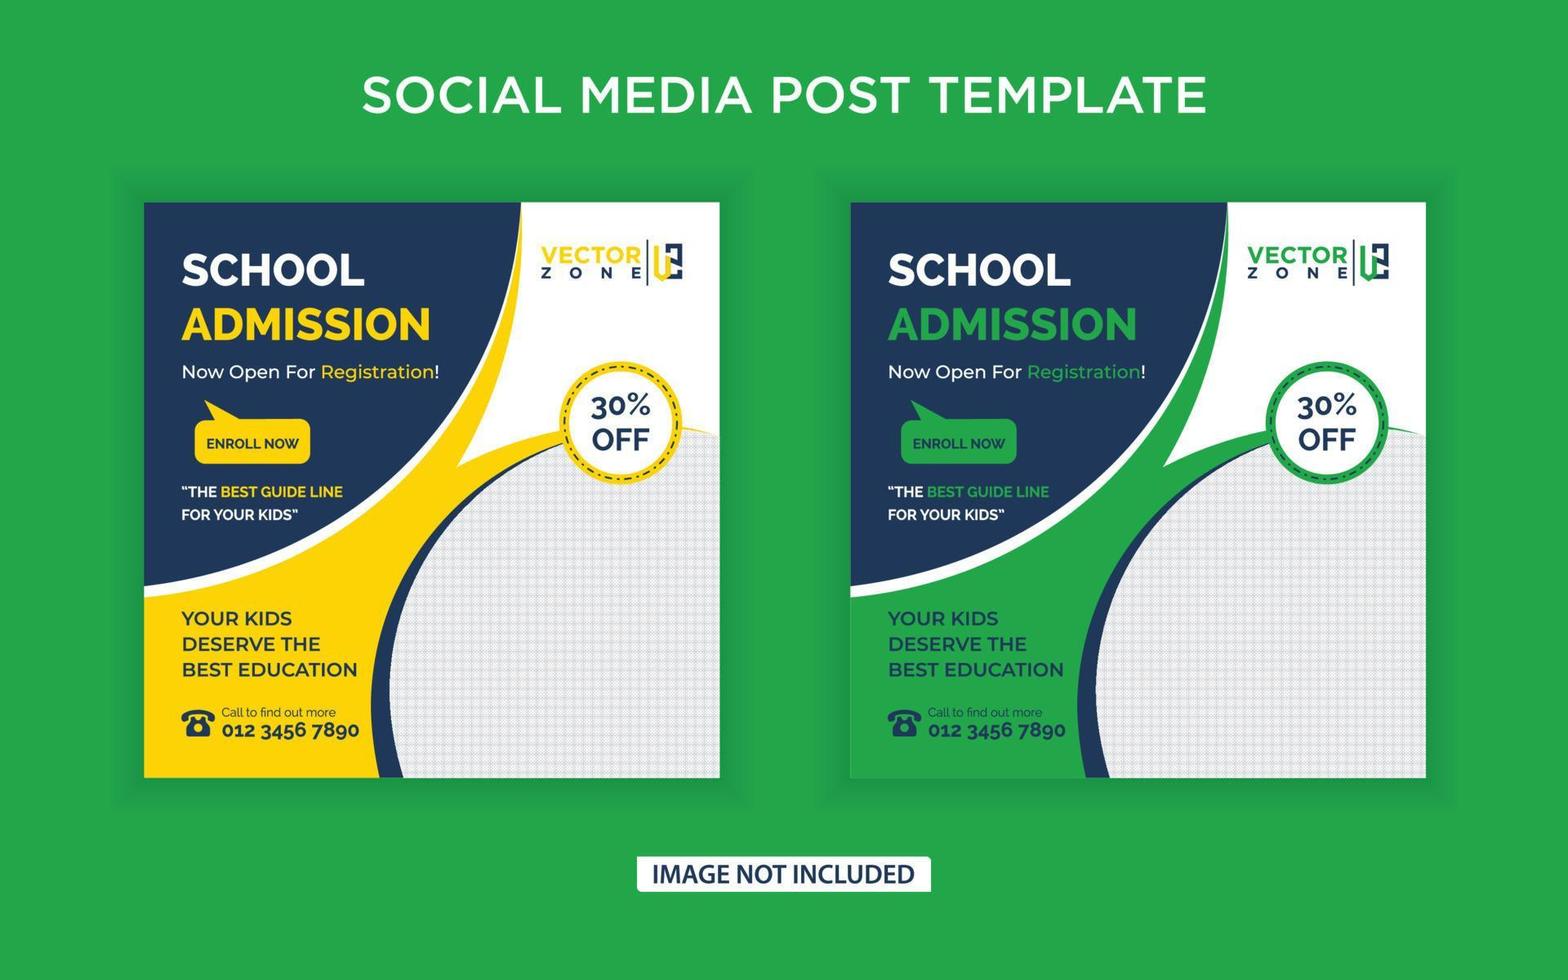 School admission social media post vector